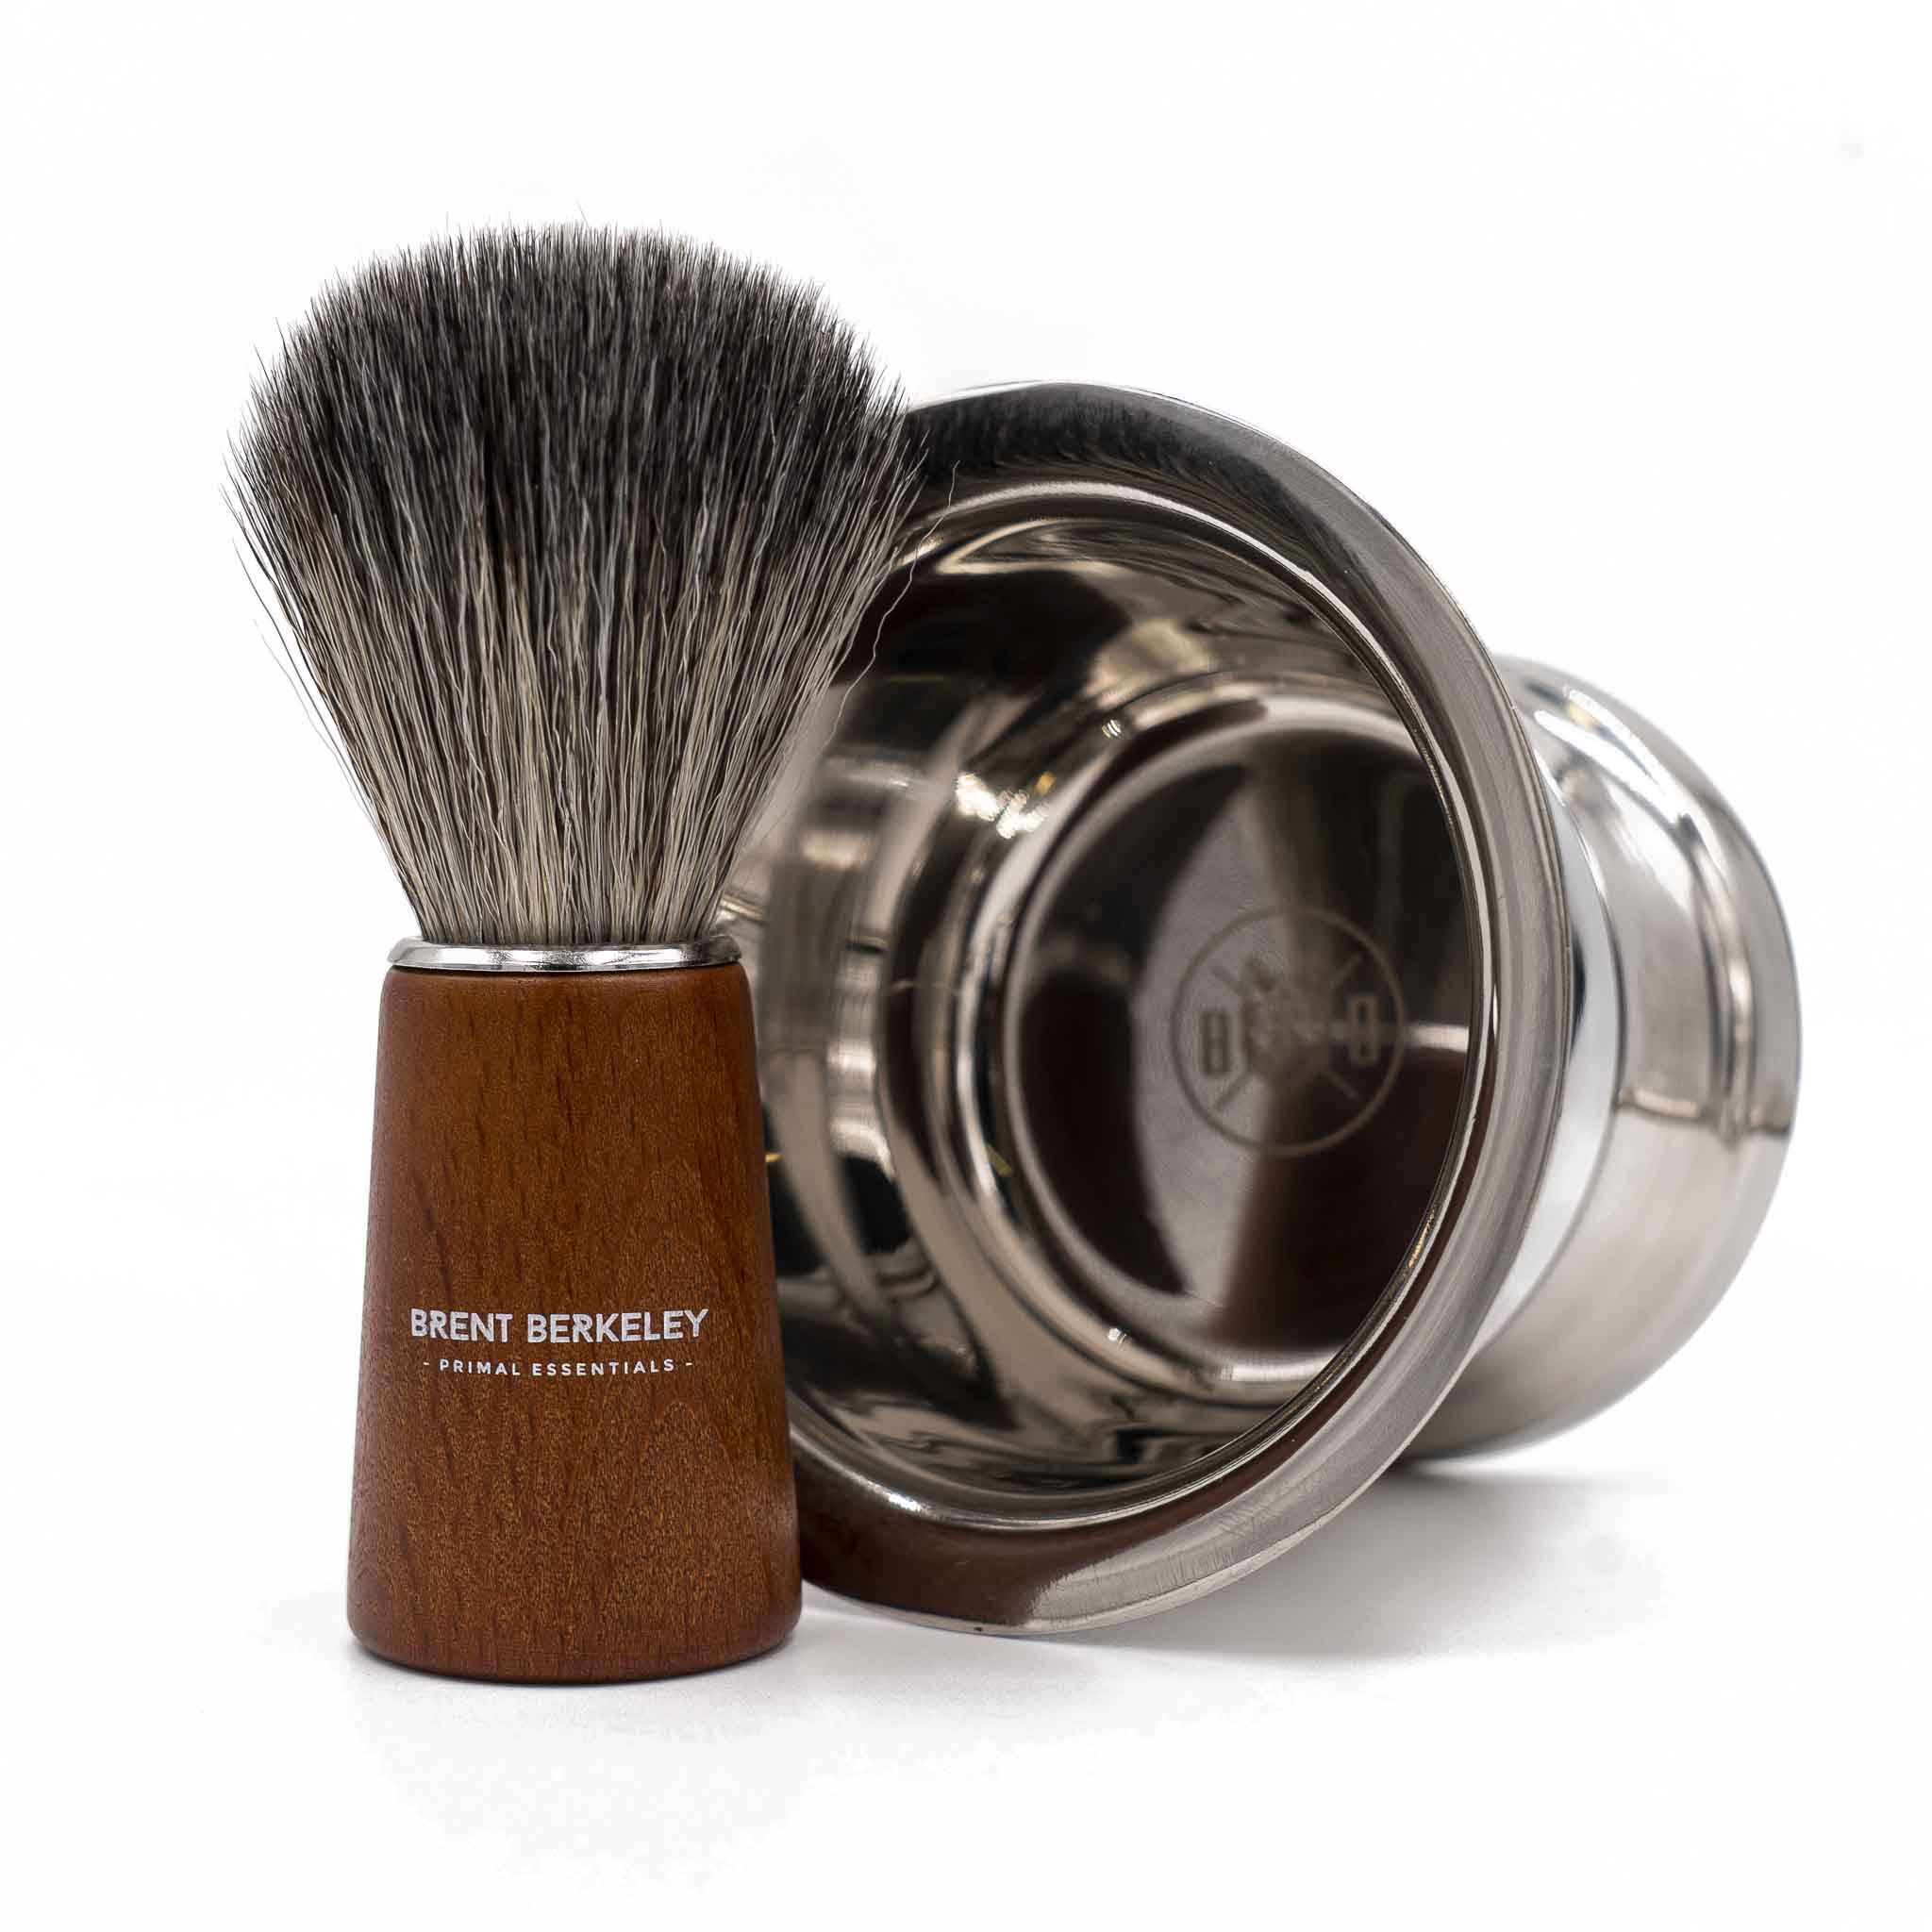 Brent Berkeley The Pegleg Shaving Brush Silvertip Fibre